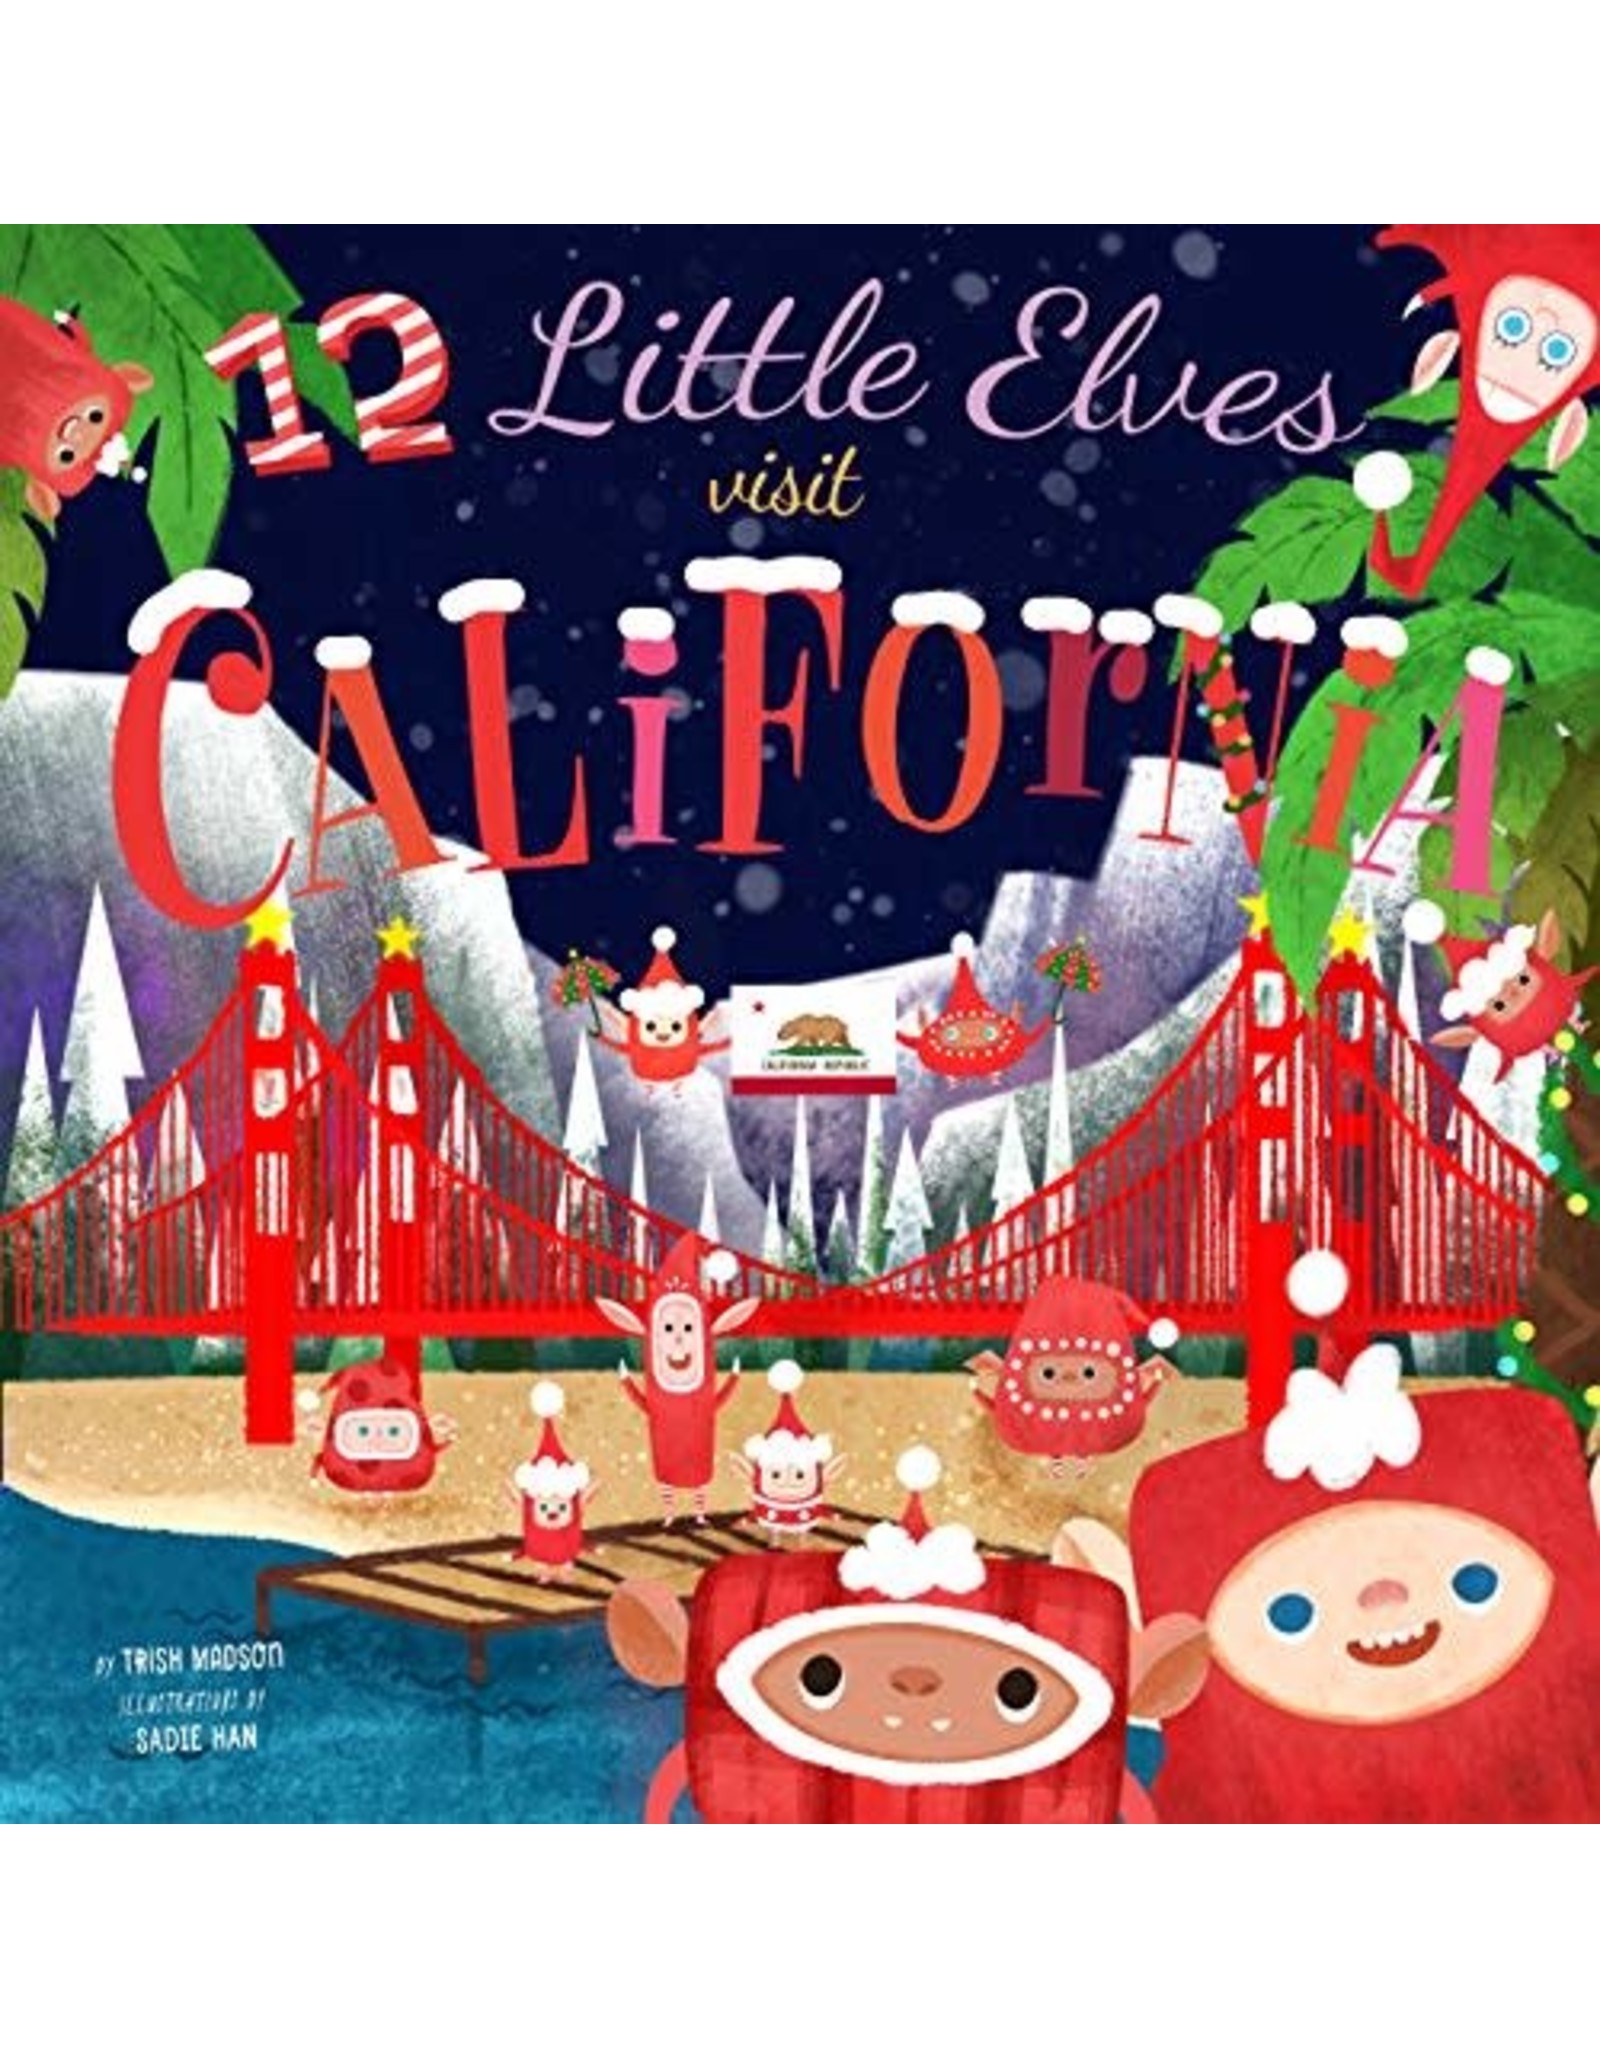 12 Little Elves Visit California